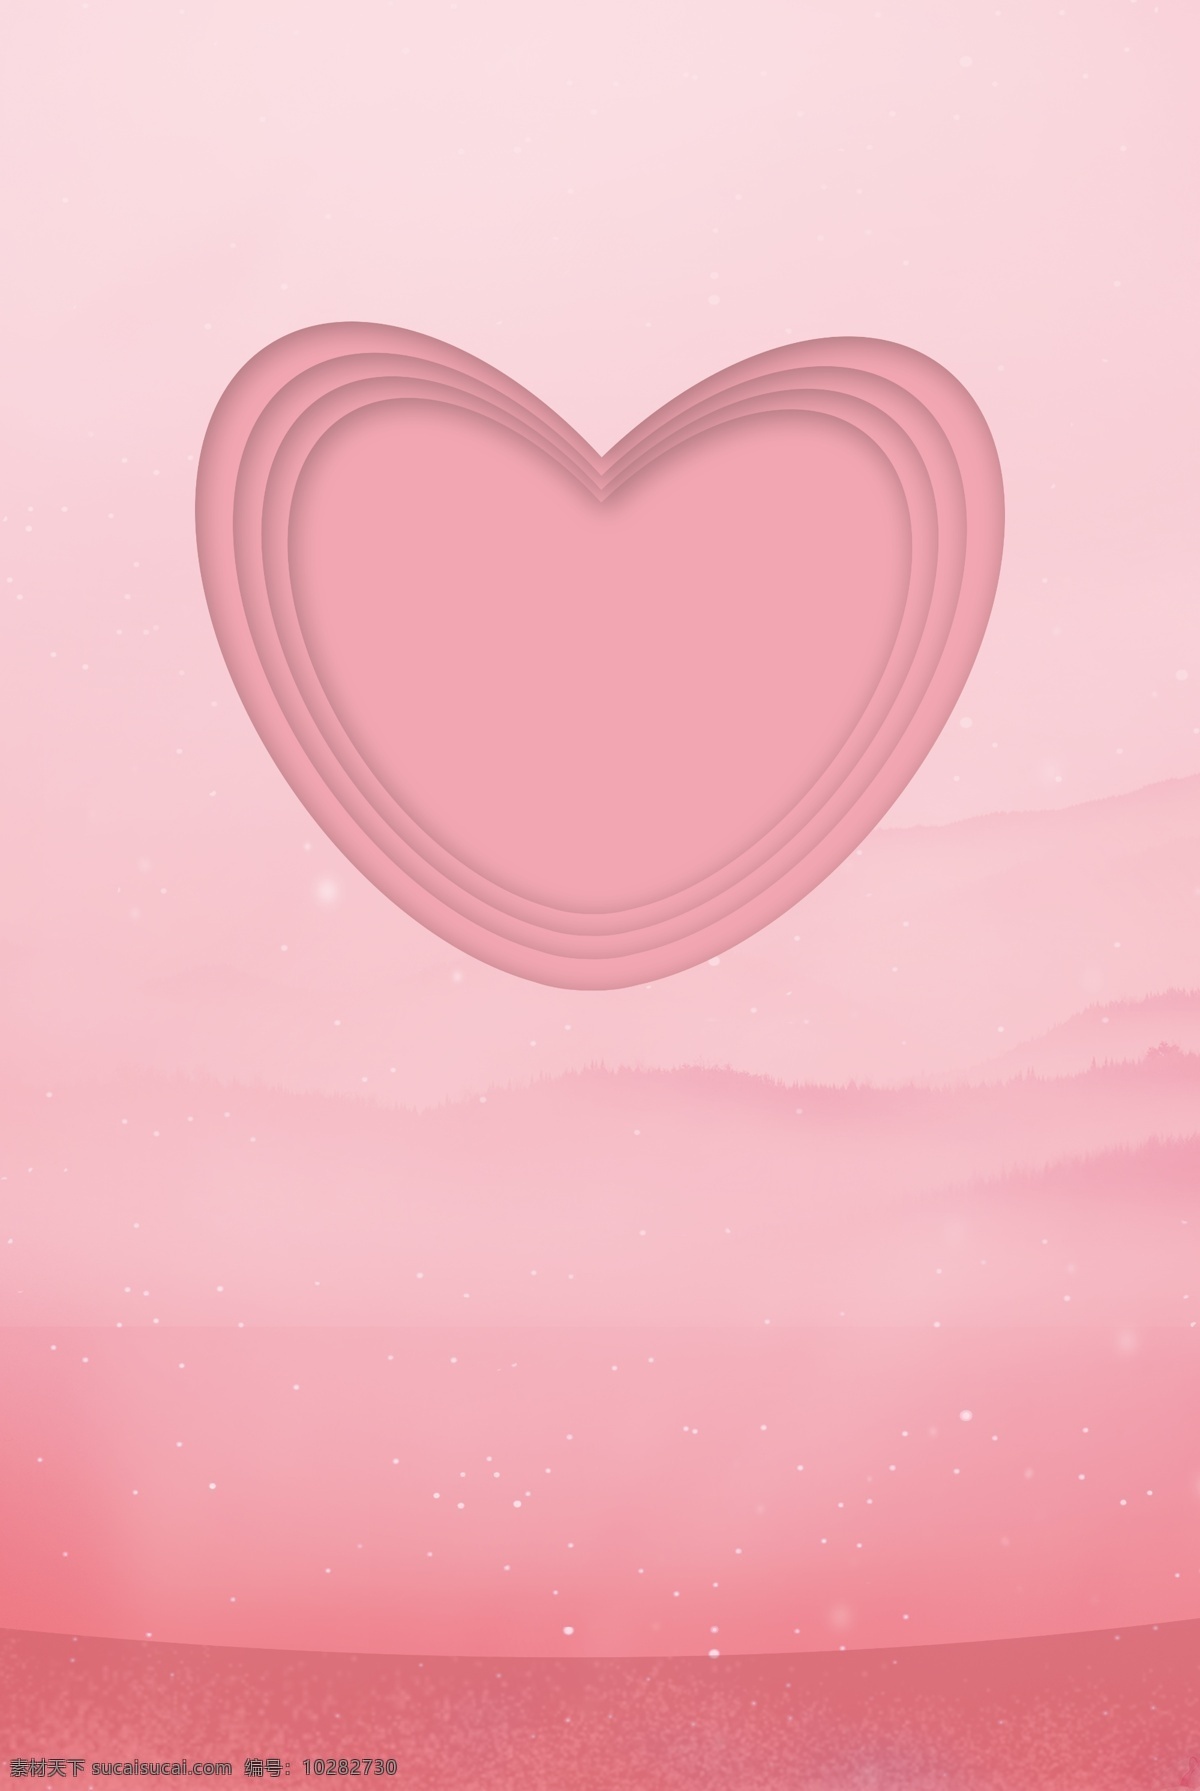 简约 粉色 通用 背景 女王节 妇女节 女神节 女生节 元素 通用背景 广告背景